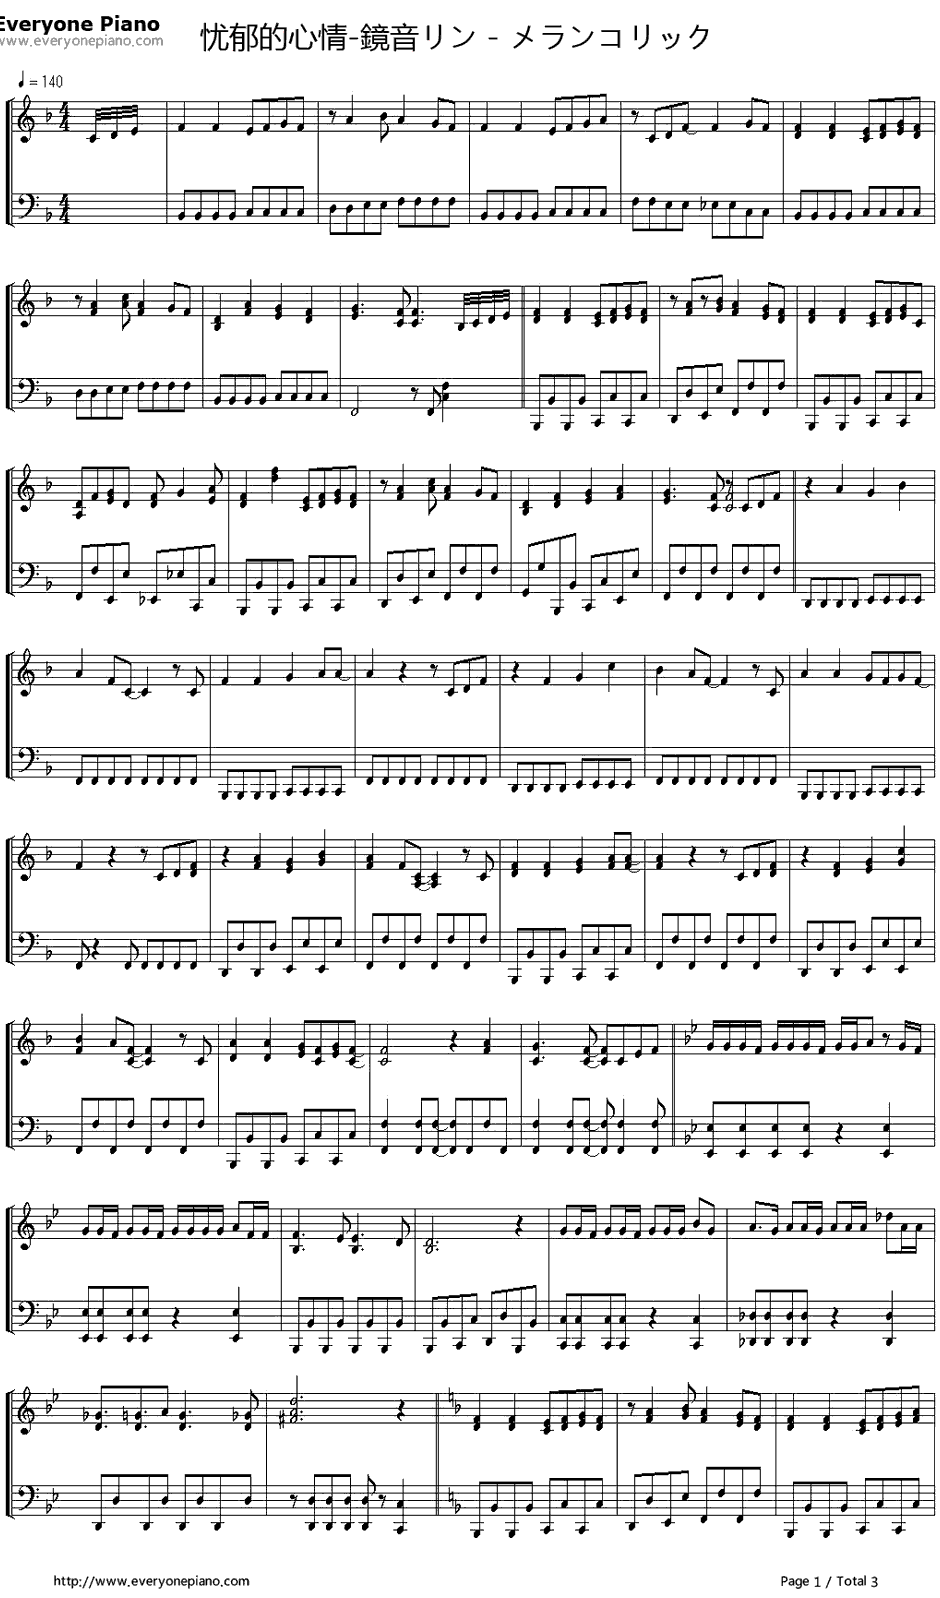 メランコリック钢琴谱-镜音リン1